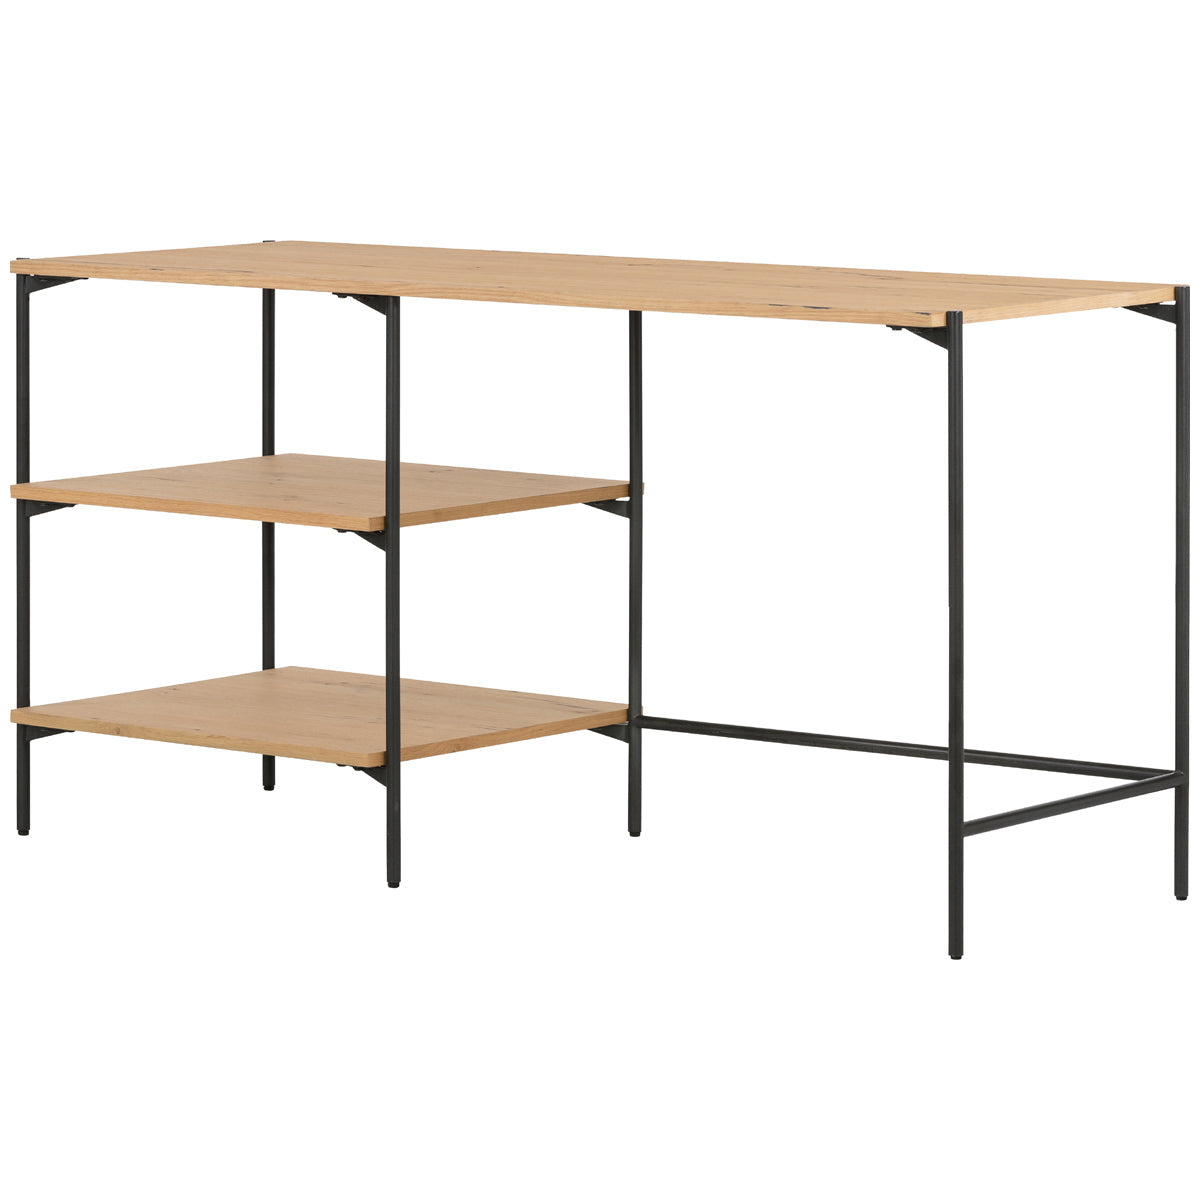 Four Hands Haiden Eaton Modular Desk with Shelves - Light Oak Resin